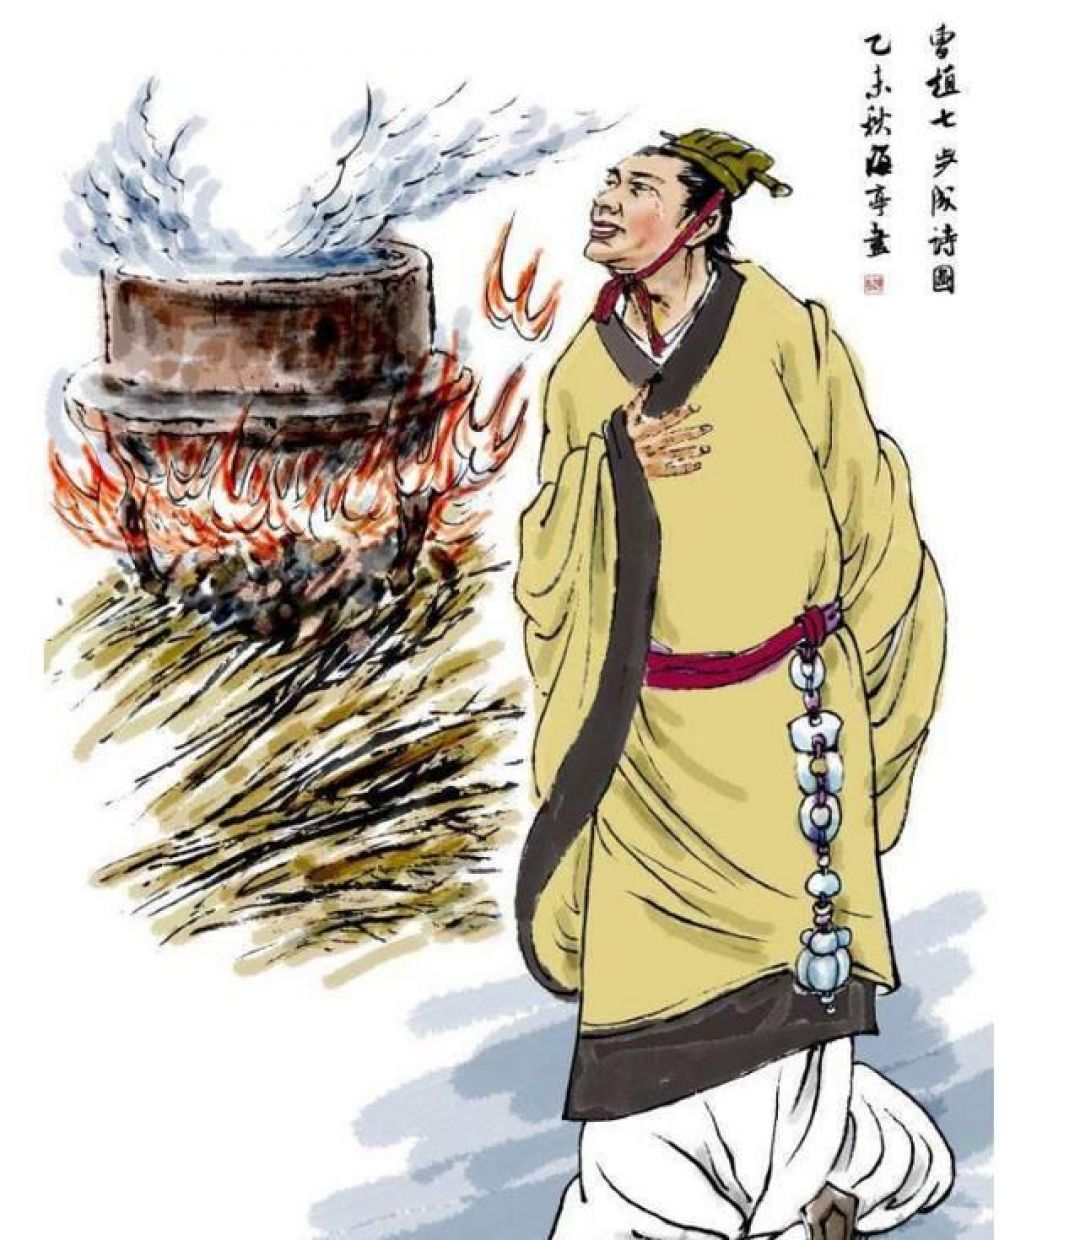 Mitologi China: 七步诗的故事 Kisah Puisi 7 Langkah Cao Zhi　-Image-2